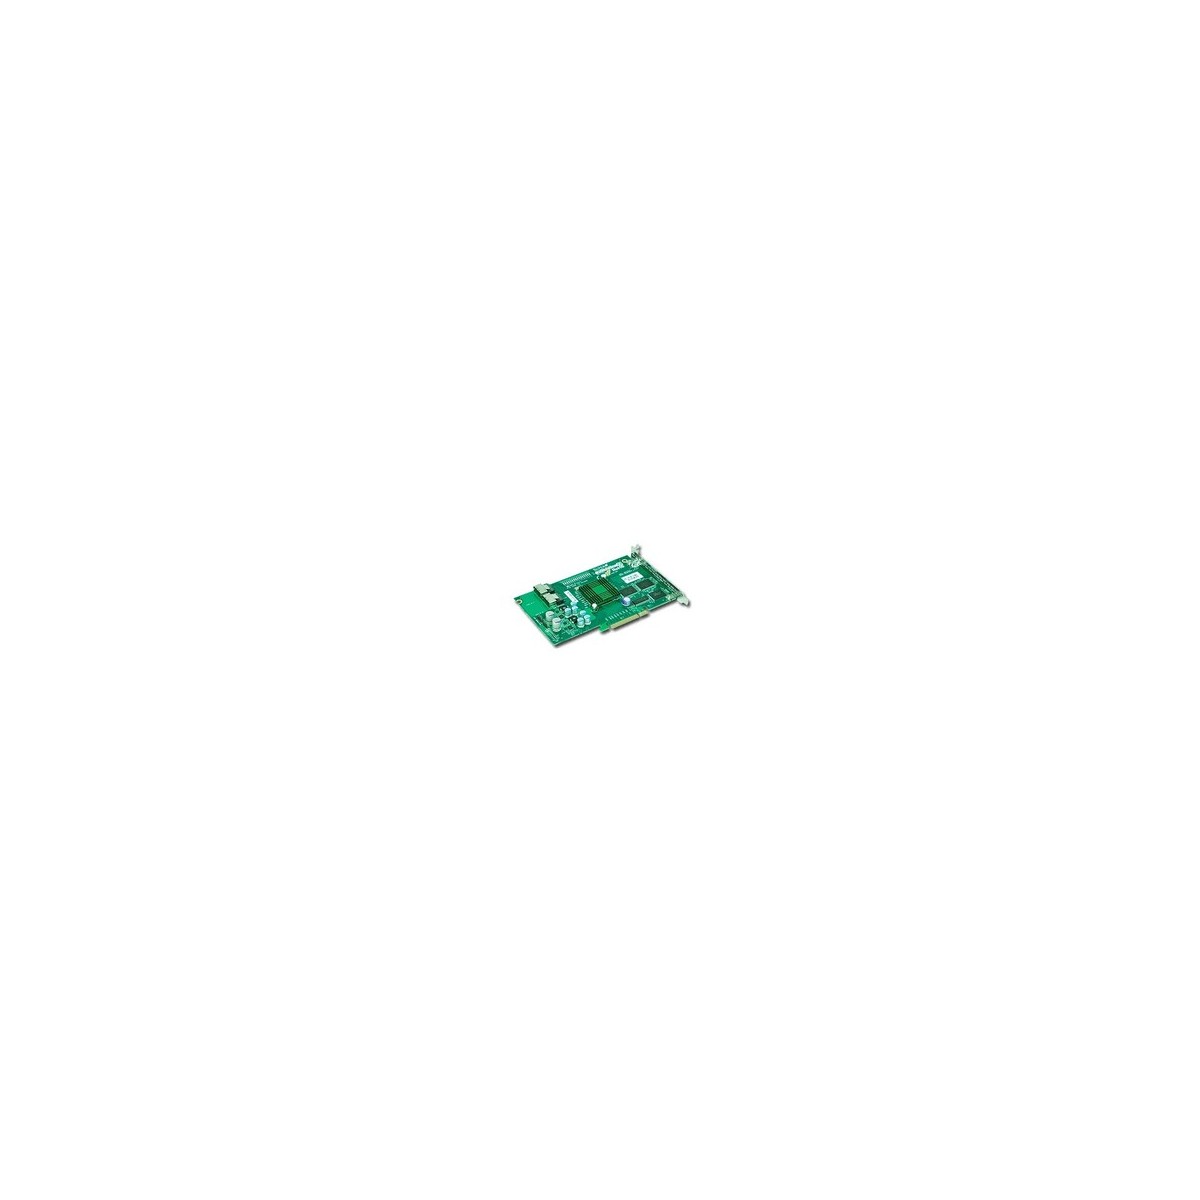 Supermicro AOC-USAS2-L8iR - PCIe - SAS - Green - 525 MHz - 167.6 mm - 111.2 mm